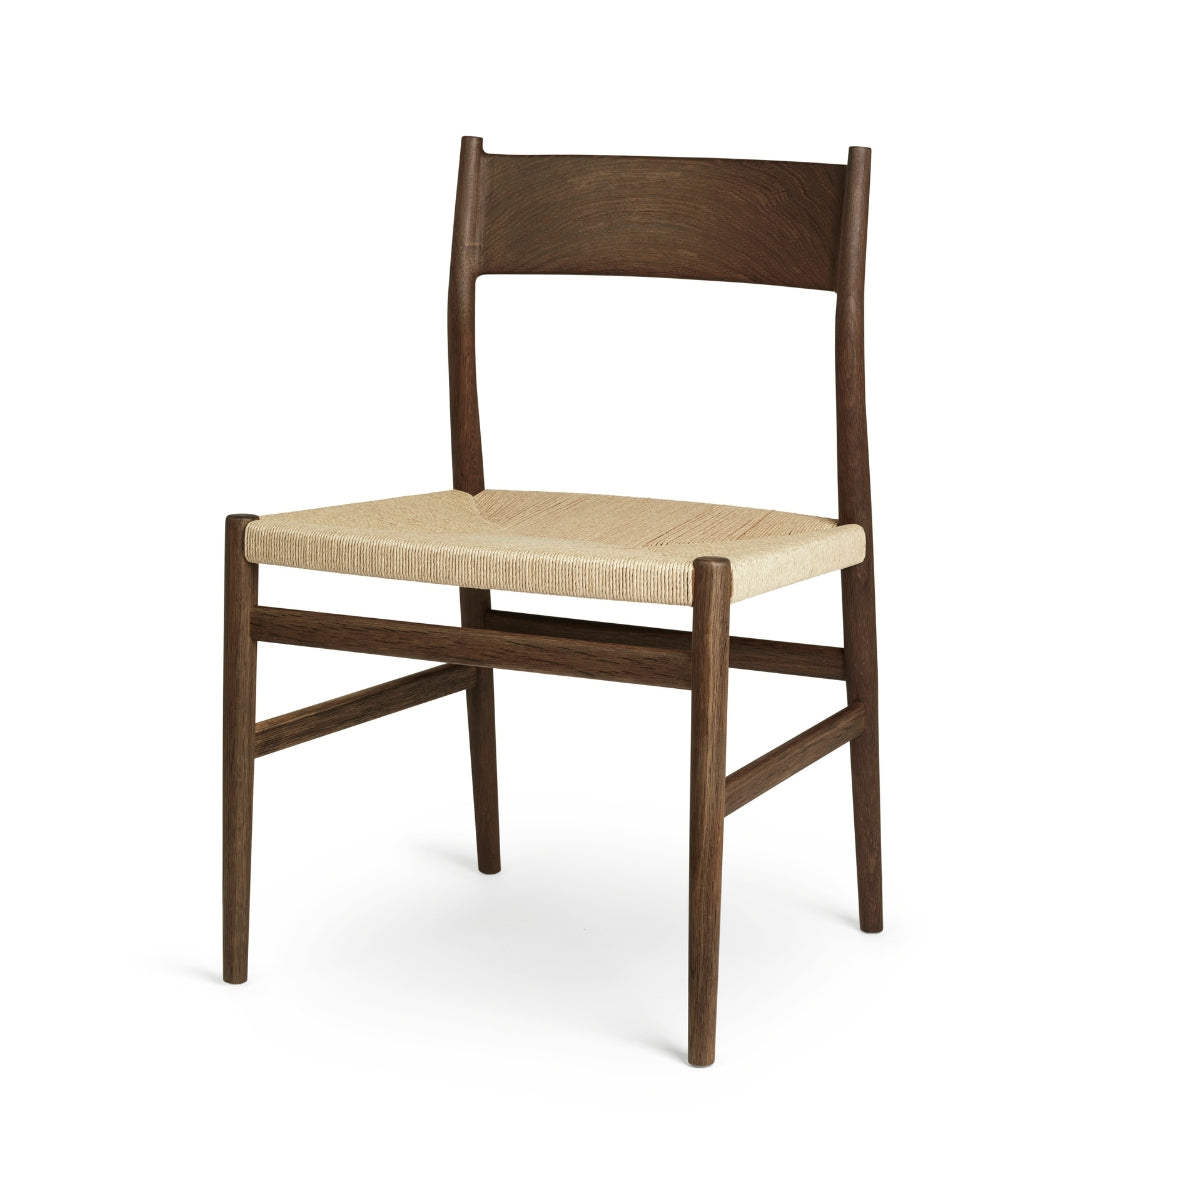 Brdr. Krüger | Arv Chair Without Armrest, Solid Backrest - Weaved Seat